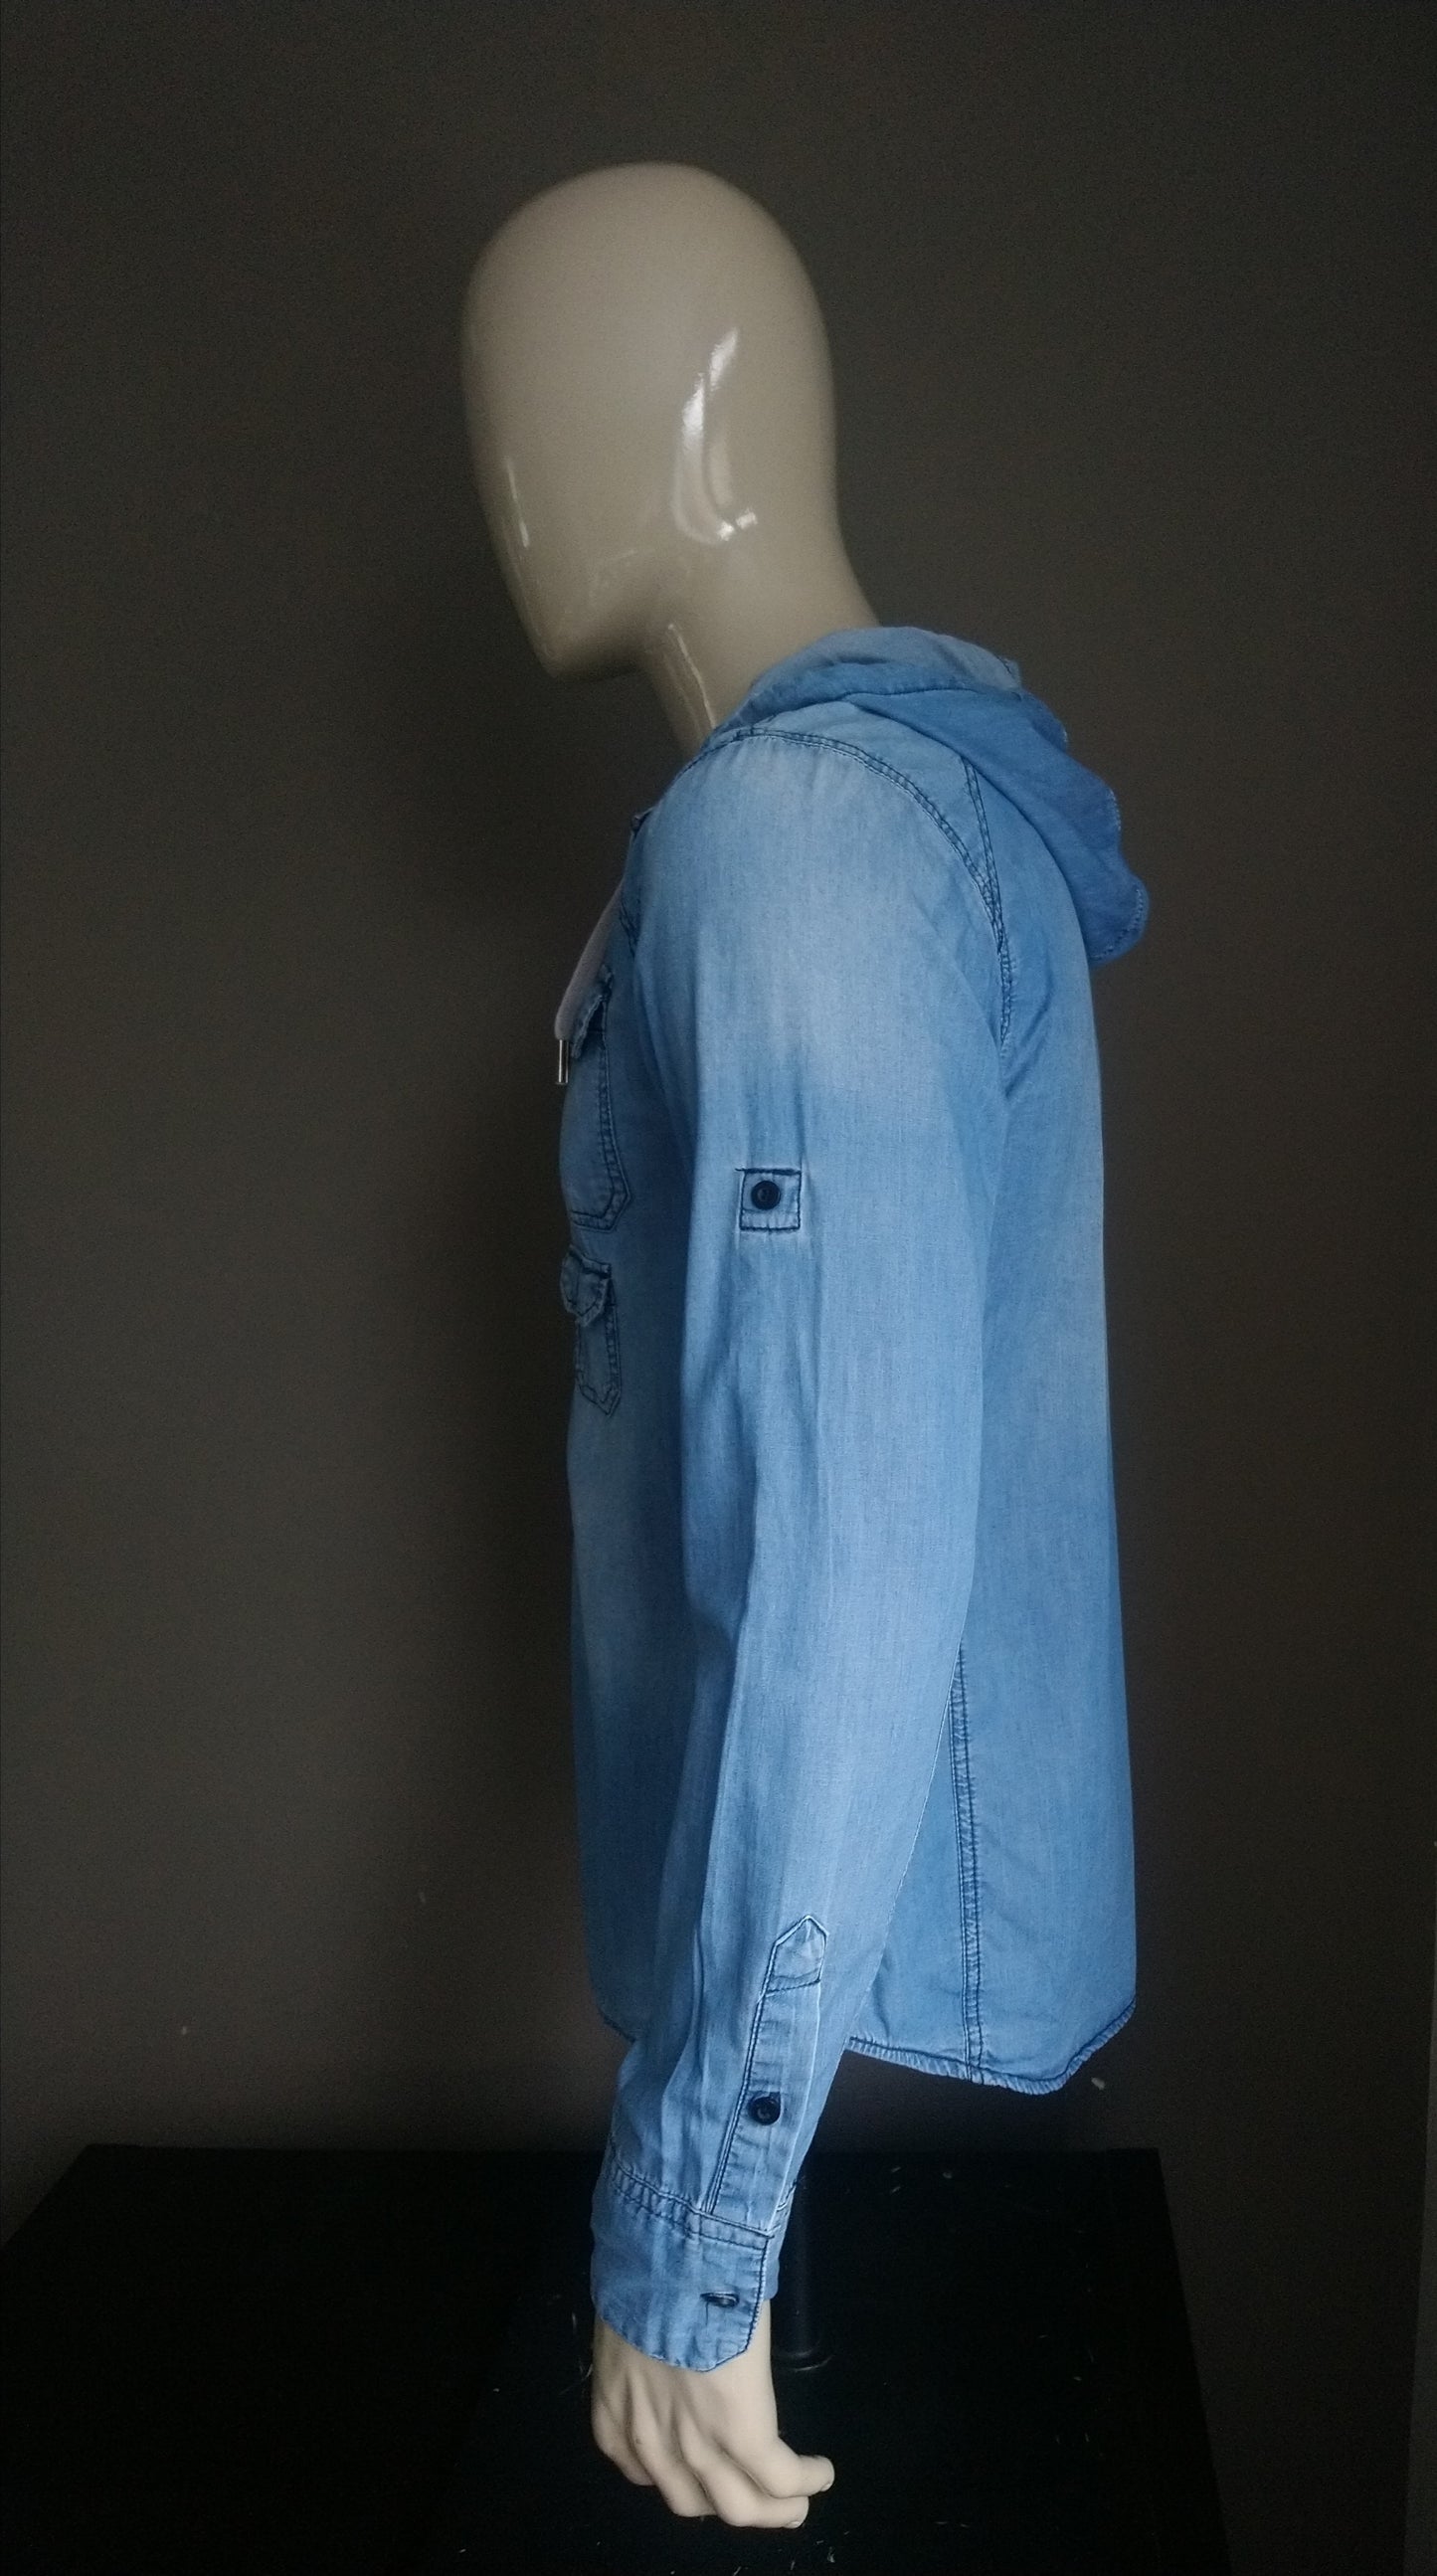 Coolcat -Hemd mit Kapuze. Blauer Jeansstoff. Größe L.